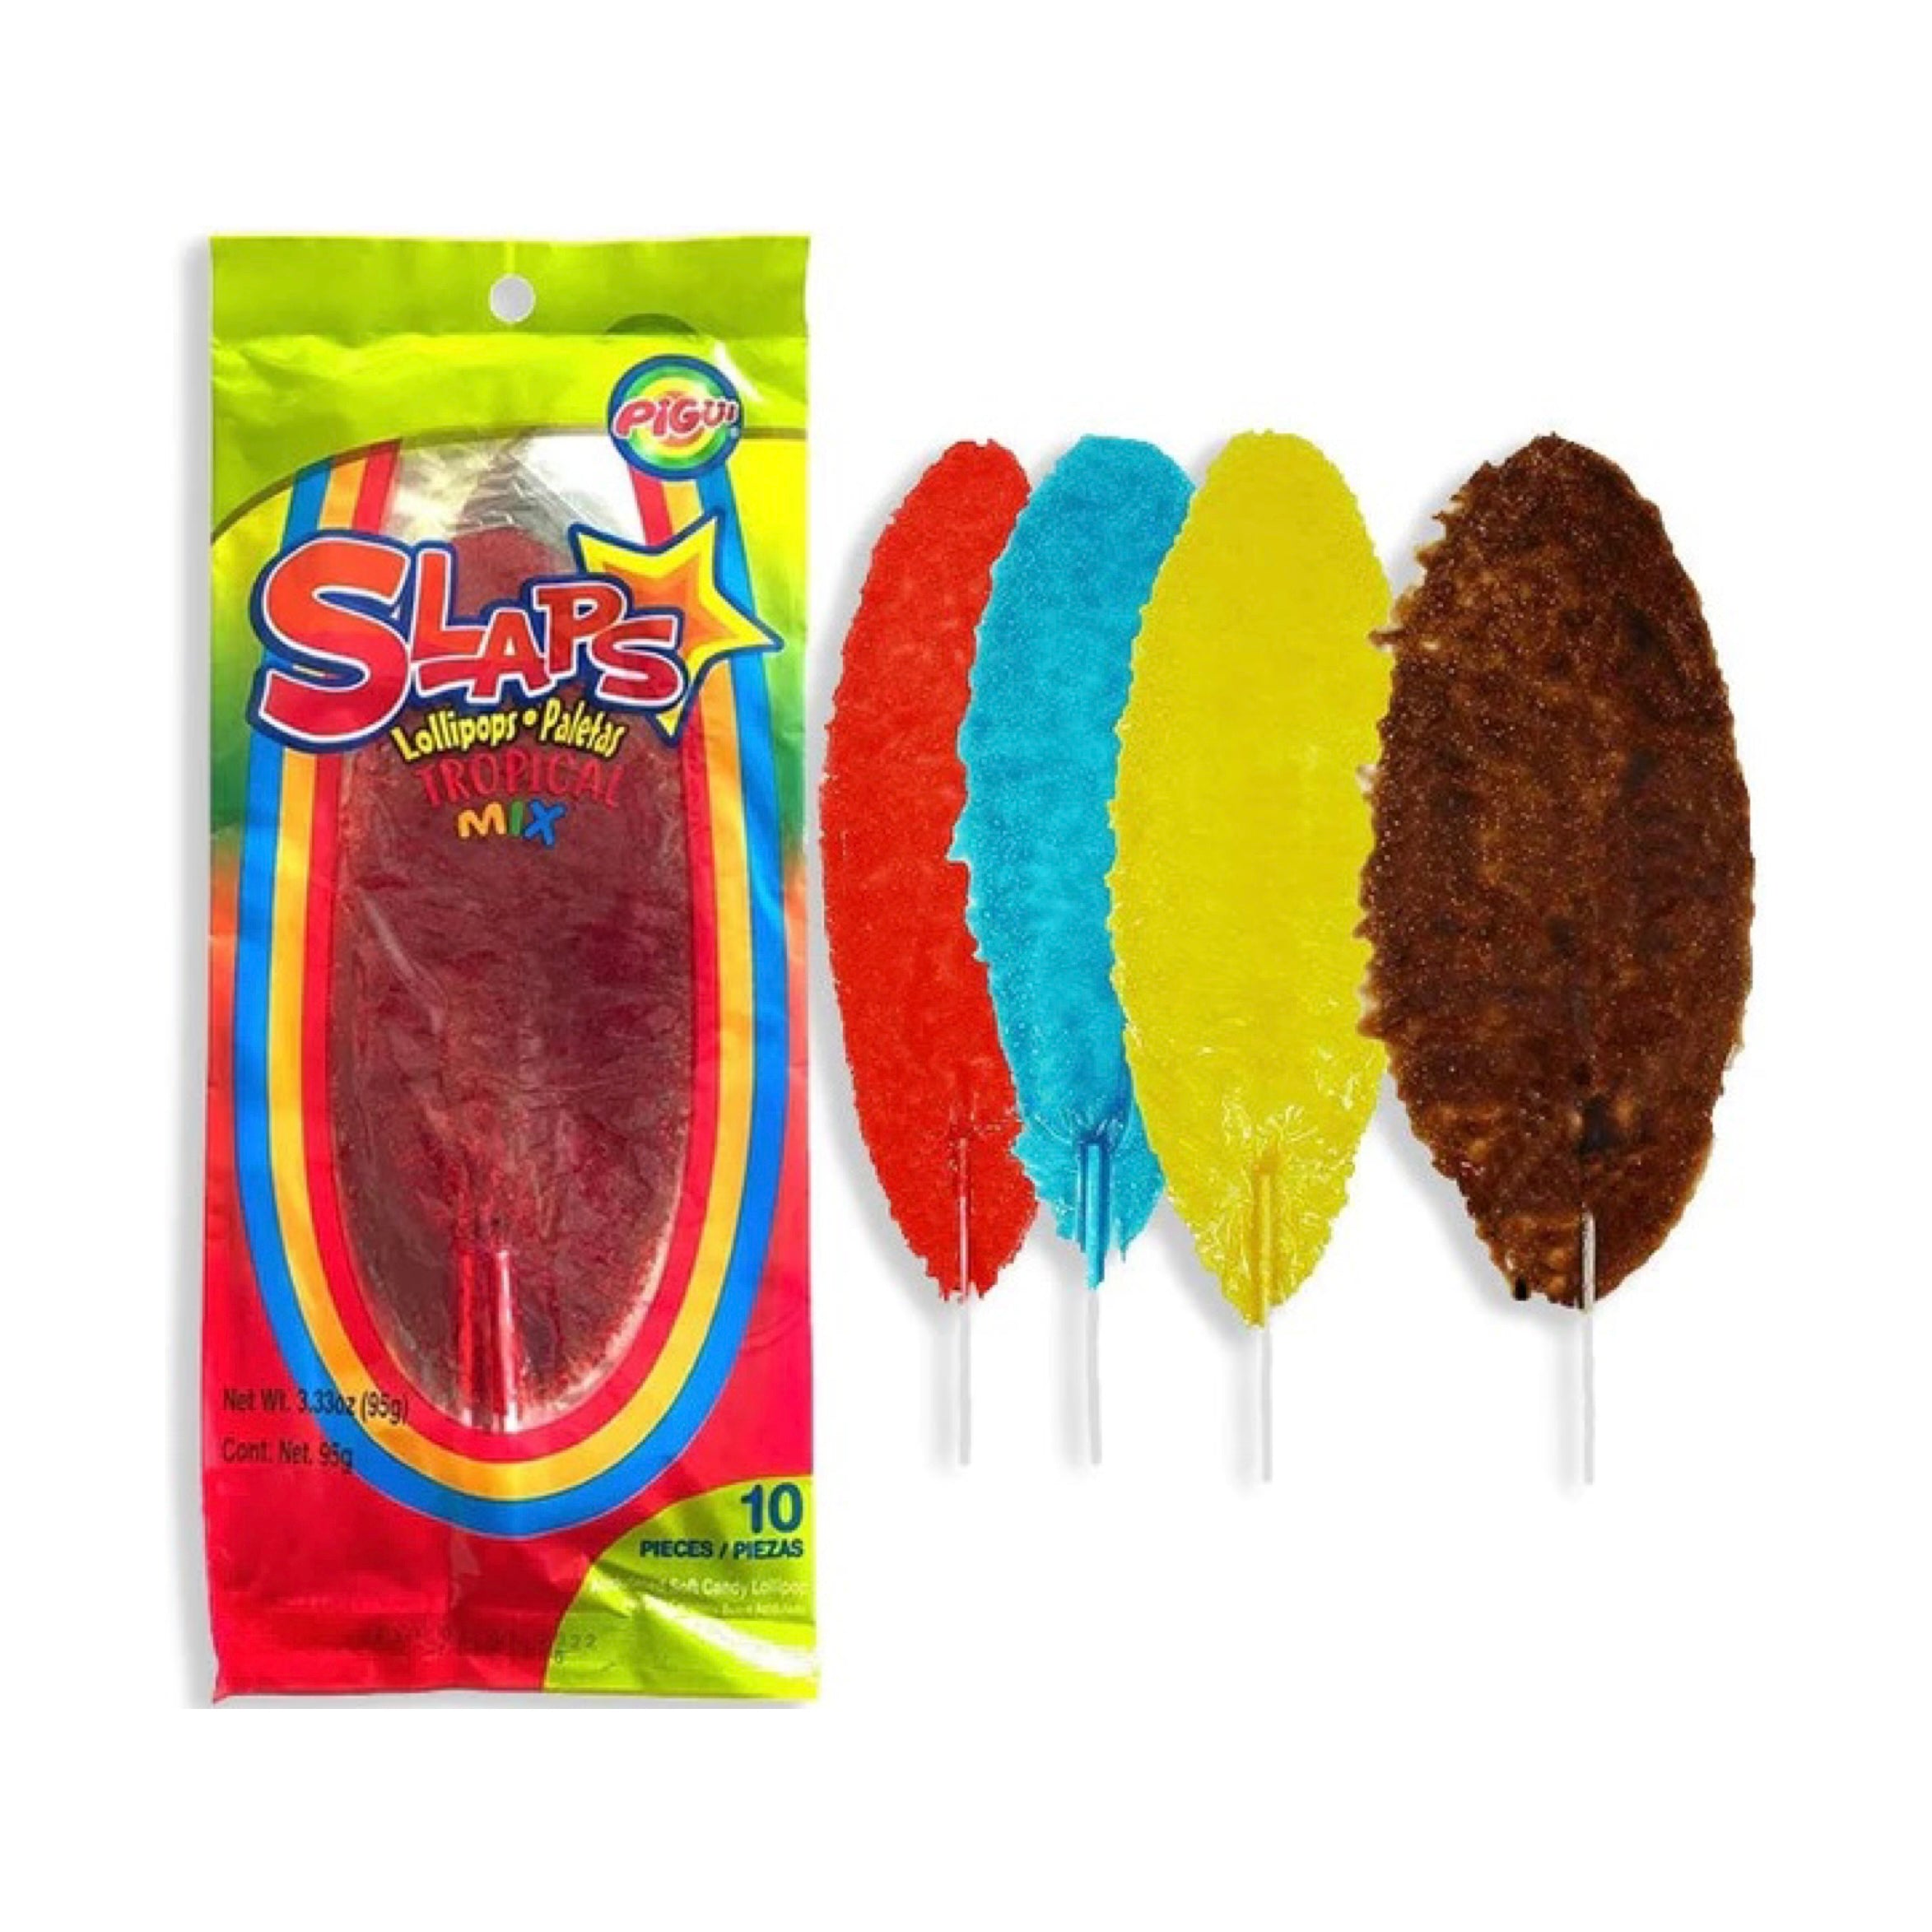 Slaps Lollipops Tropical Mix (10 Pack)